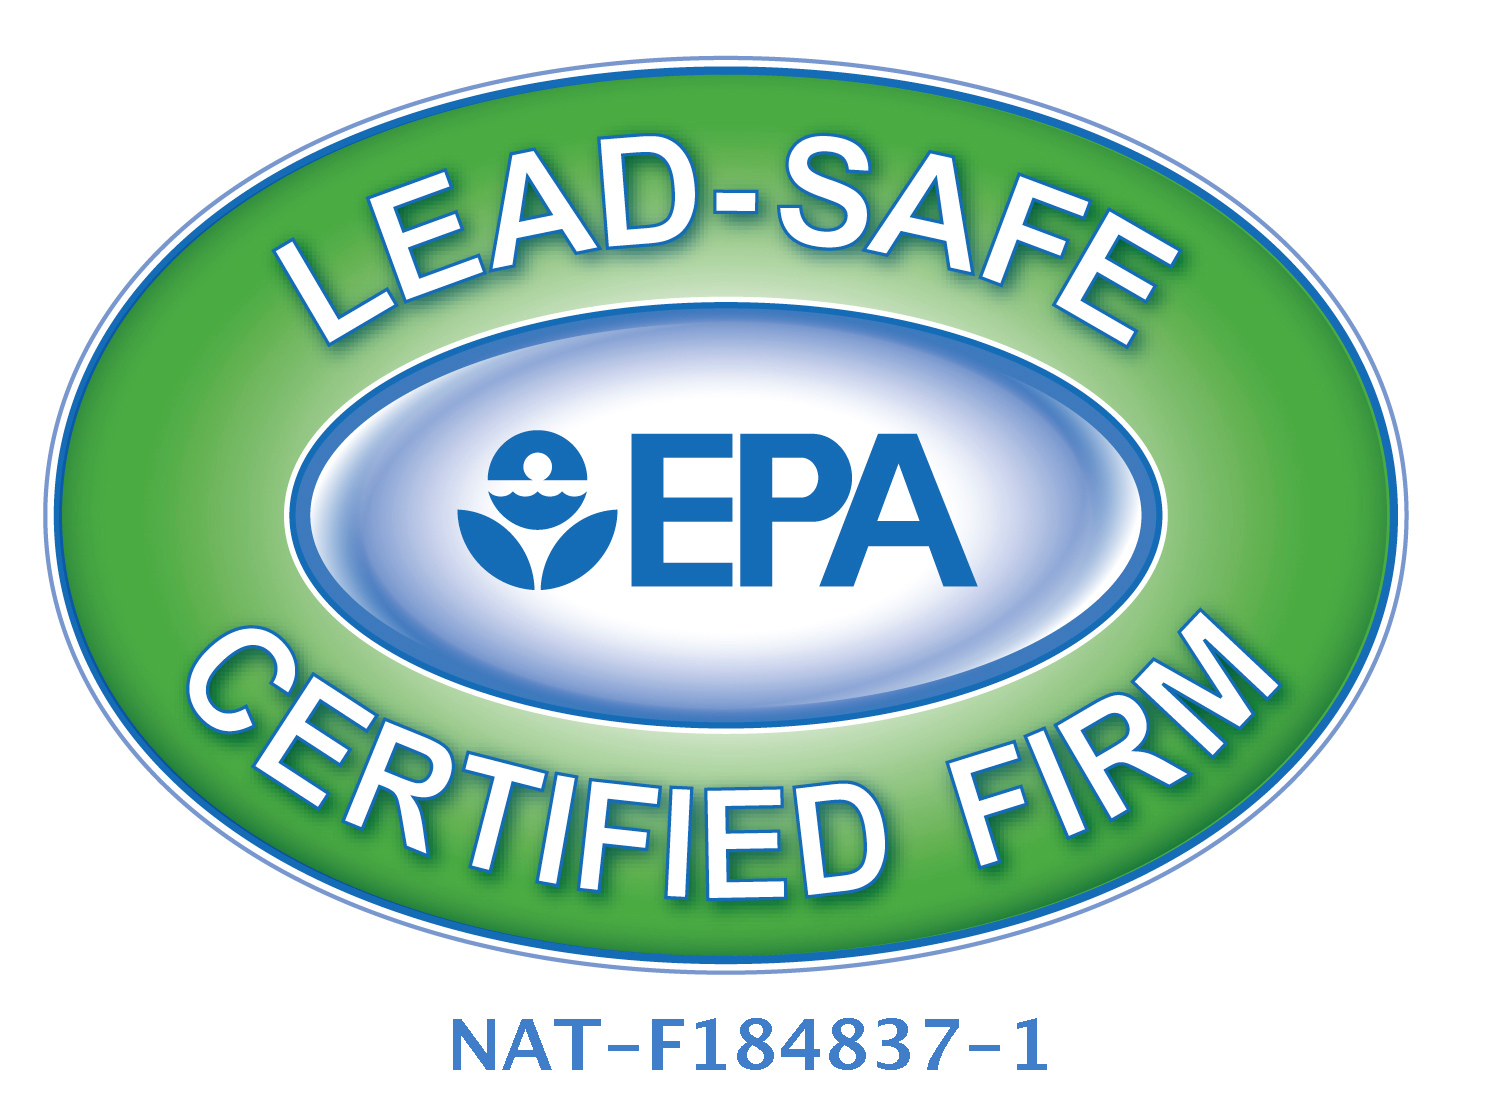 EPA lead